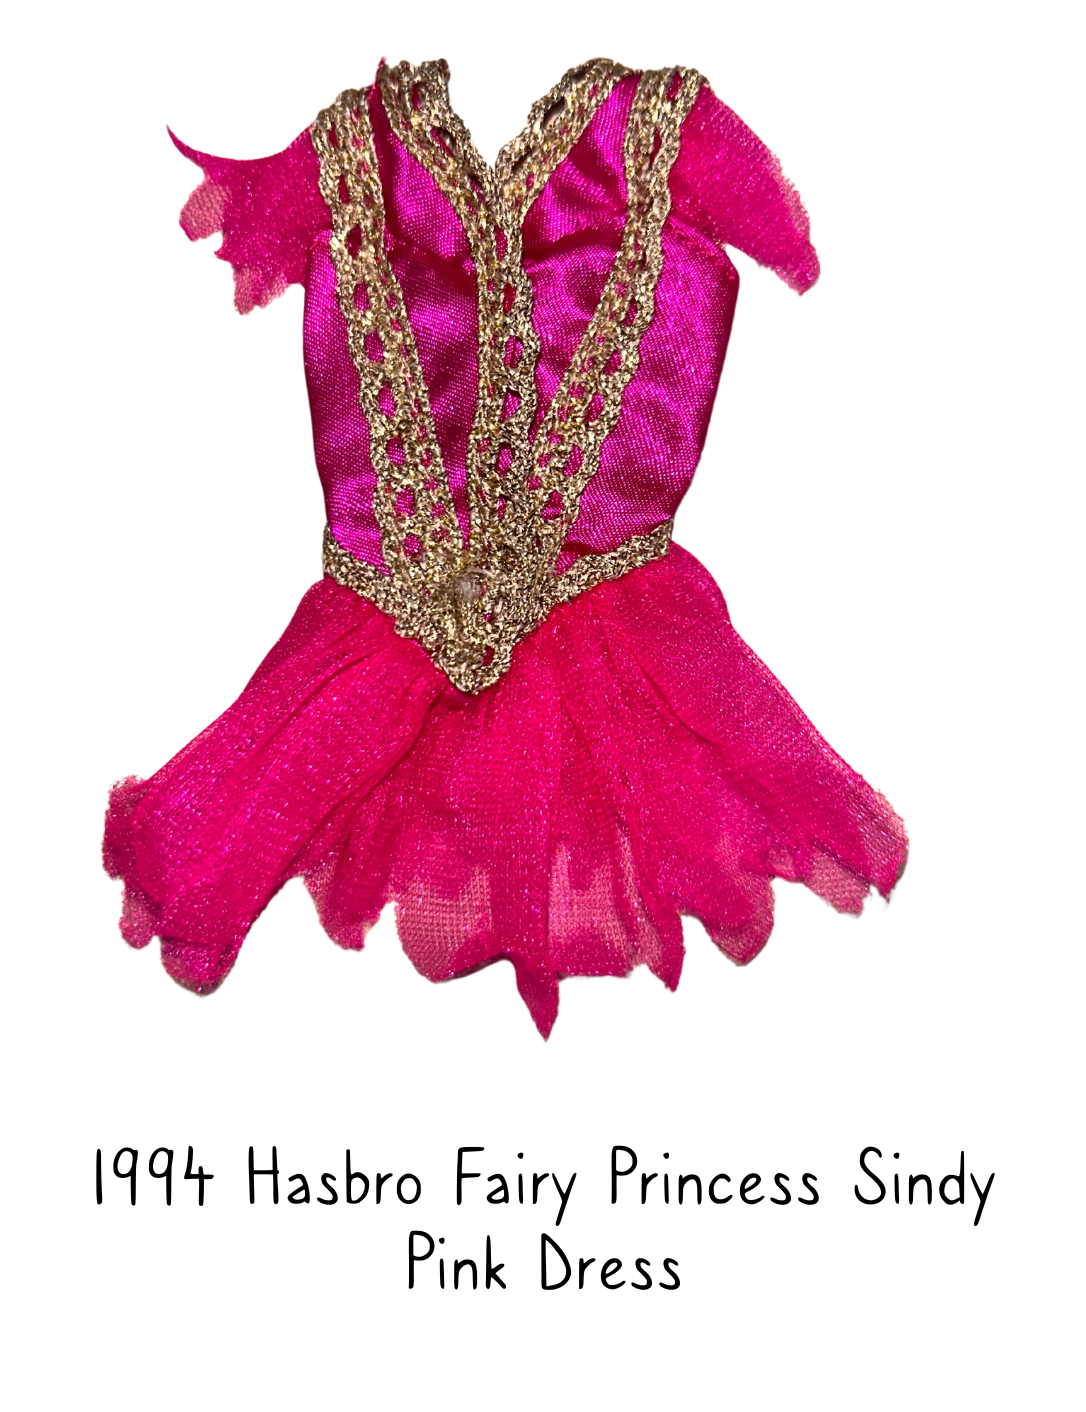 1994 Hasbro Fairy Princess Sindy Pink Dress